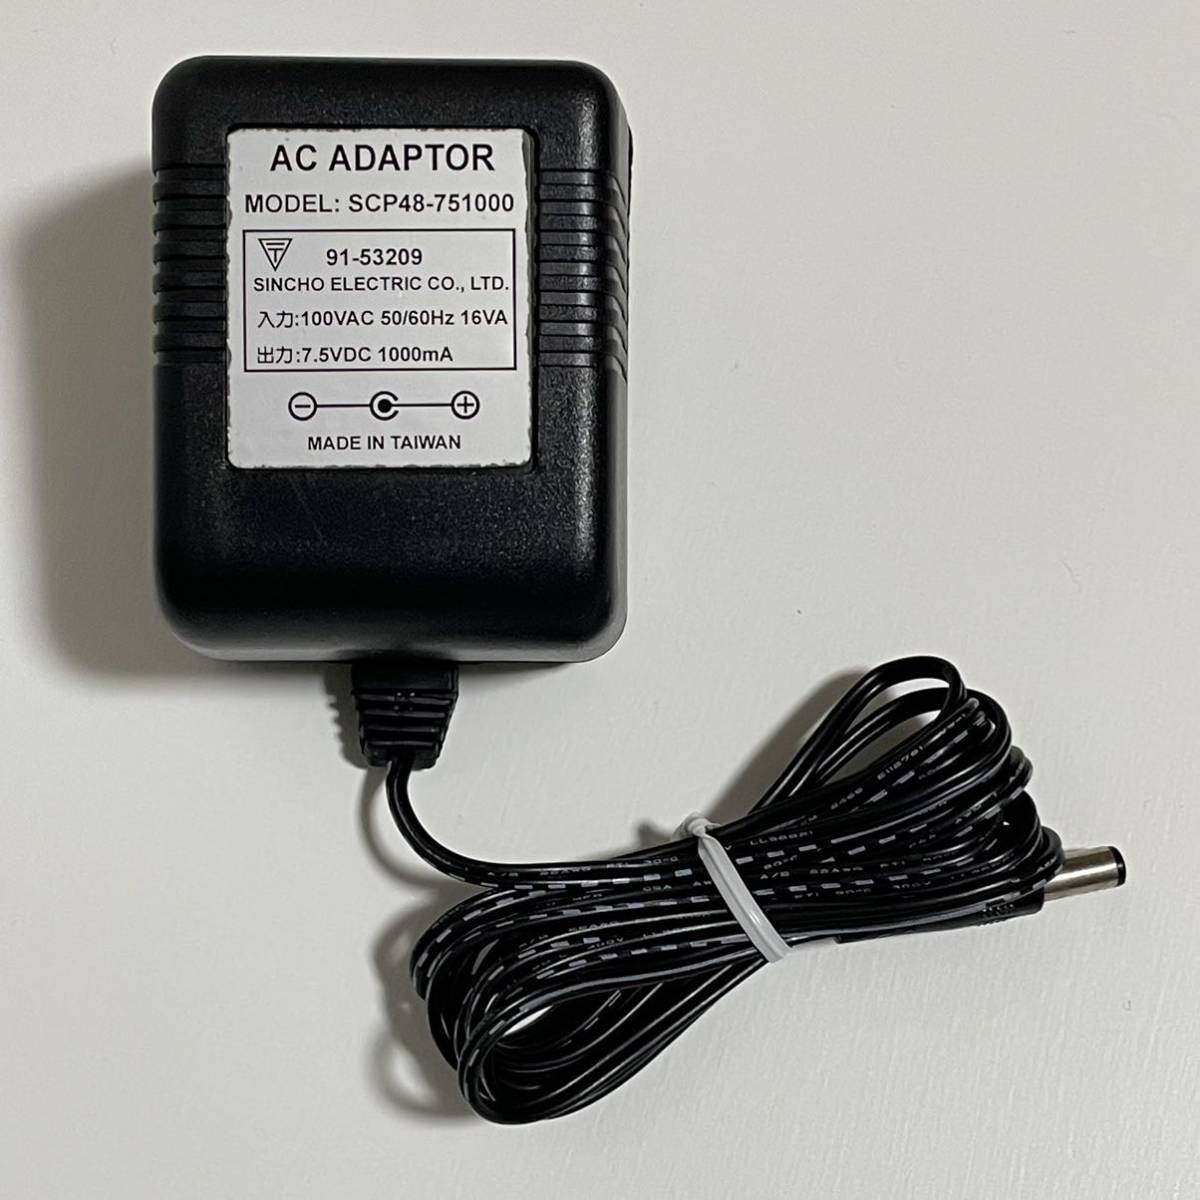 SINCHO ELECTRIC ACアダプター SCP48-751000 7.5V 1000mA_画像1